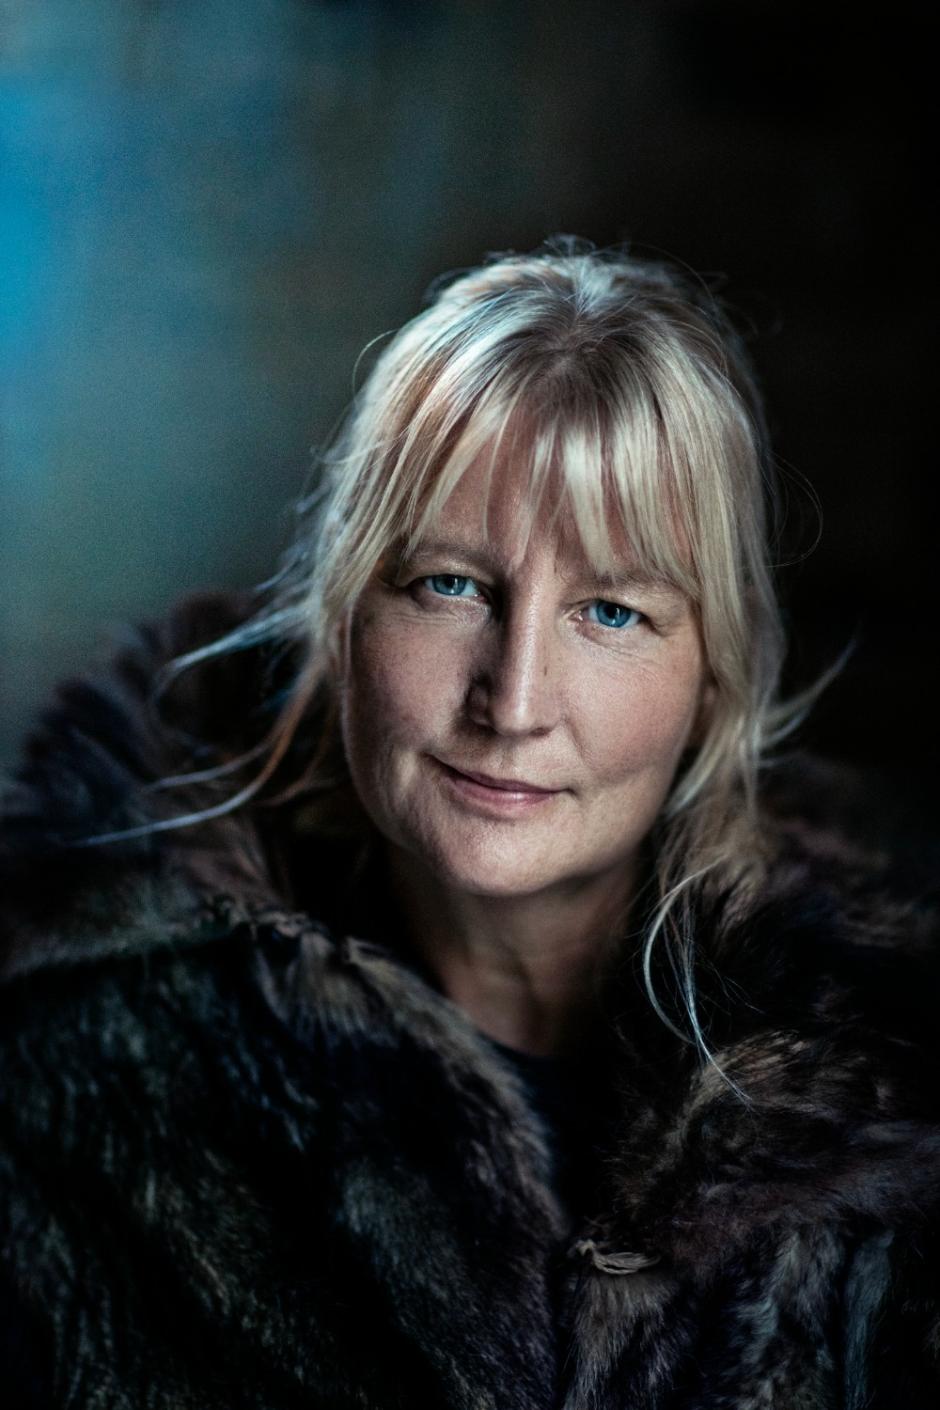 La autora de Millennium 7, Karin Smirnoff (Umeå, Suecia, 1964)